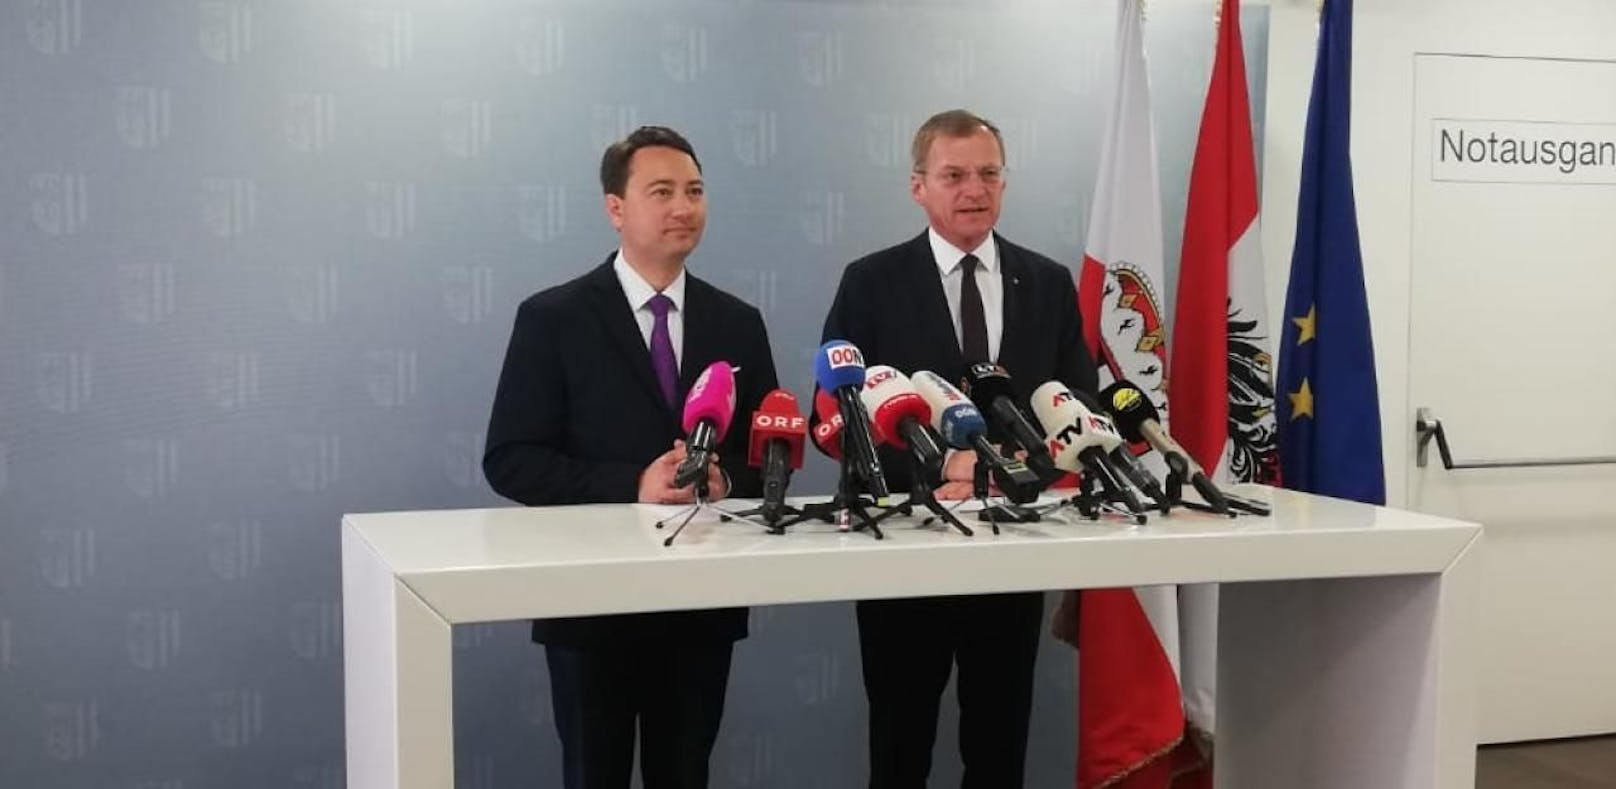 Manfred Haimbuchner (FPÖ) und Thomas Stelzer (ÖVP) bei ihrem Auftritt am Mittwoch in Linz.